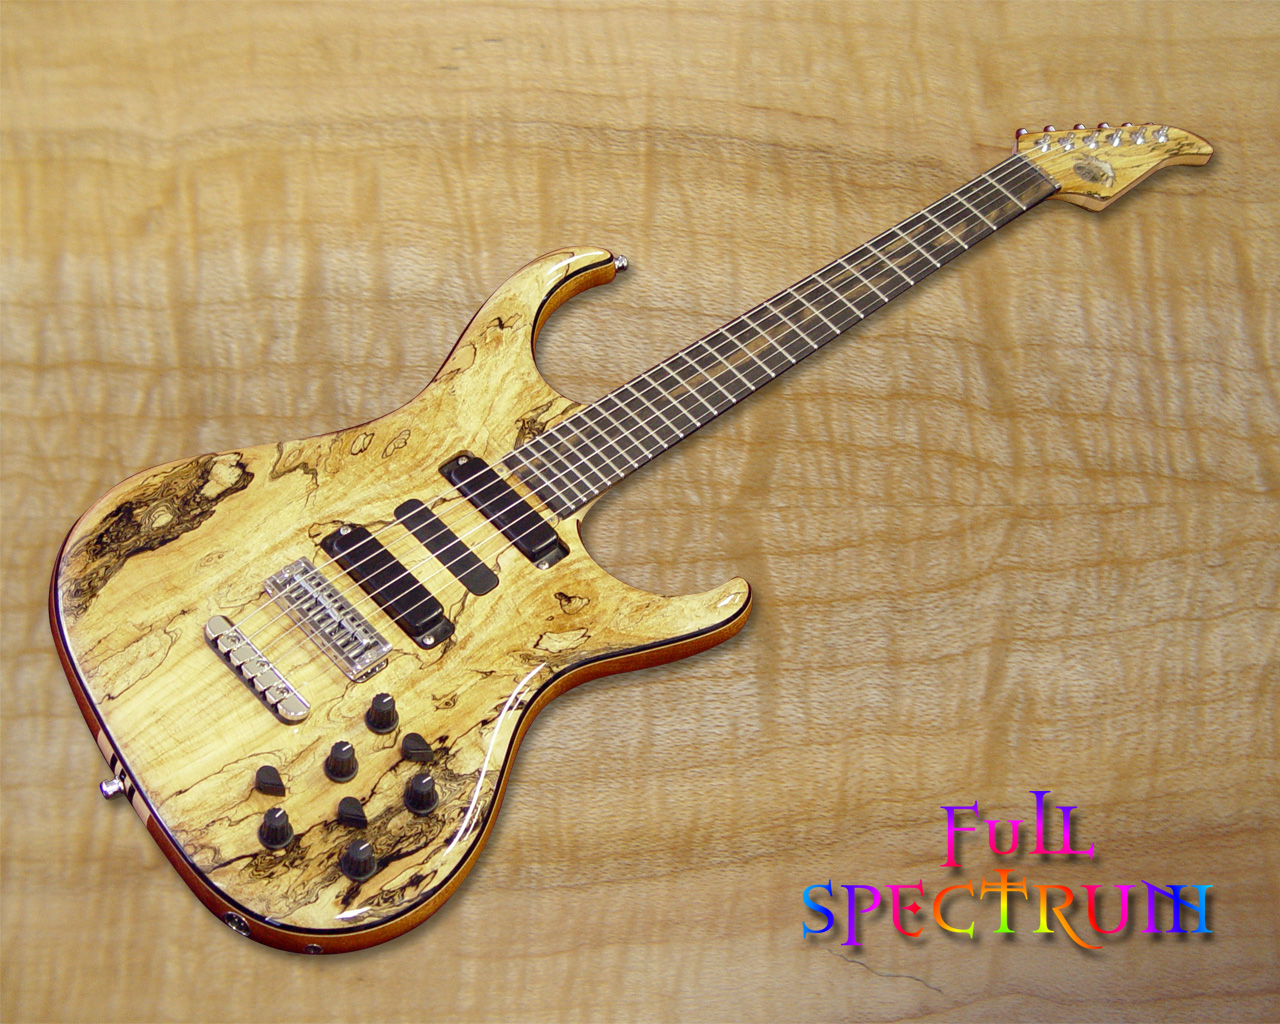 1992 Fender Stratocaster 1992 Fender Stratocaster 1959 - Spalted Maple Veneer Guitar , HD Wallpaper & Backgrounds